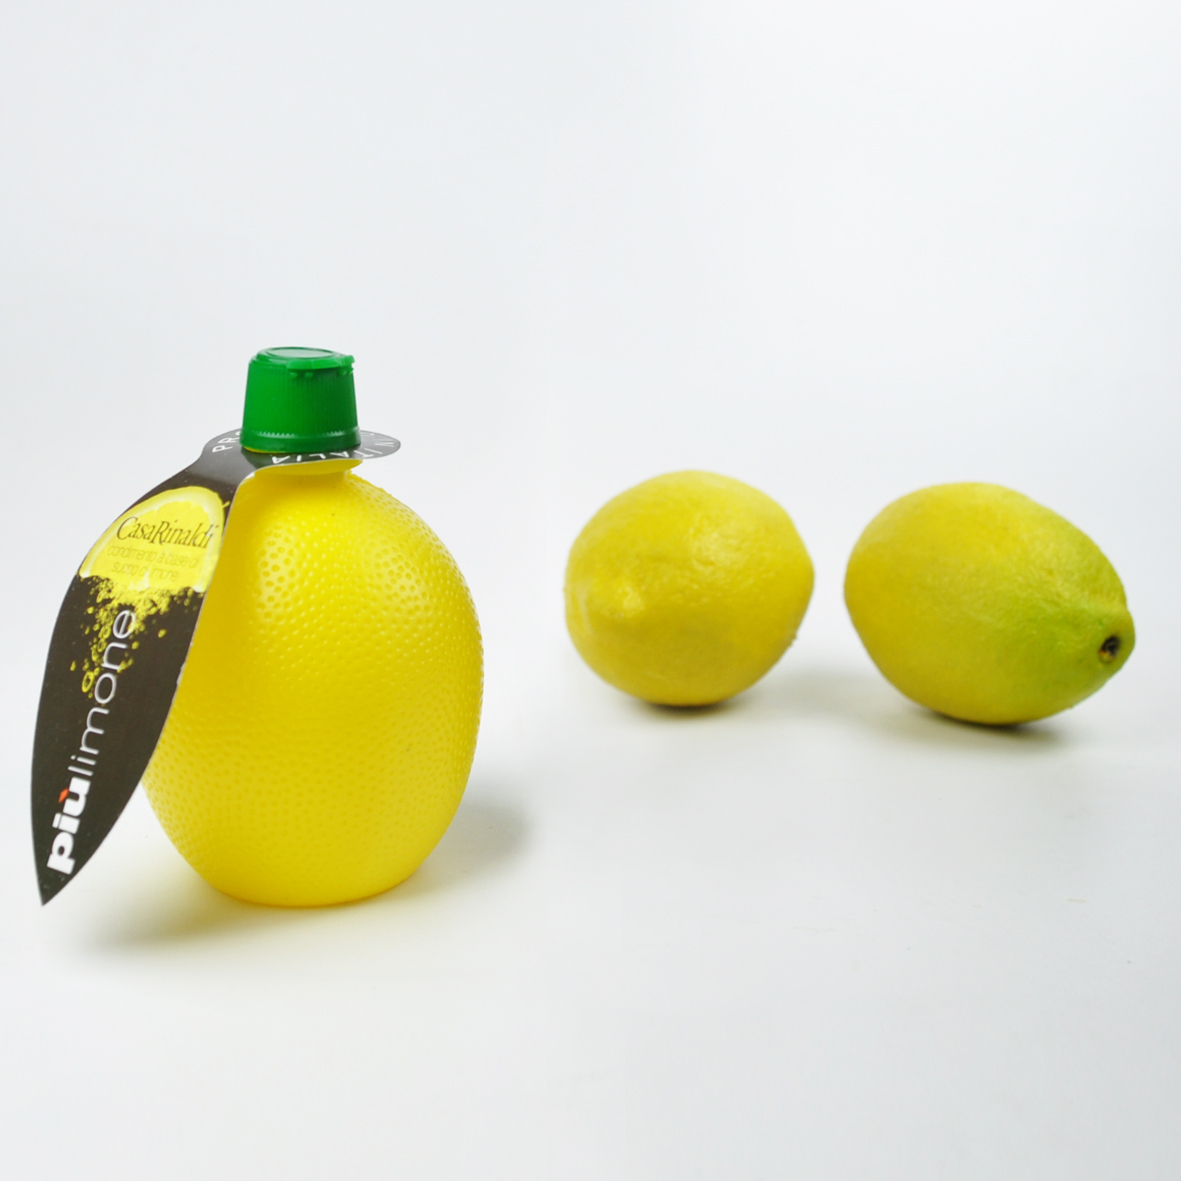 Сок лимона отзывы. Лимонная заправка. Лимонная заправка Аро. Сок лимона 200 мл Пец Хаас ООО (производитель).